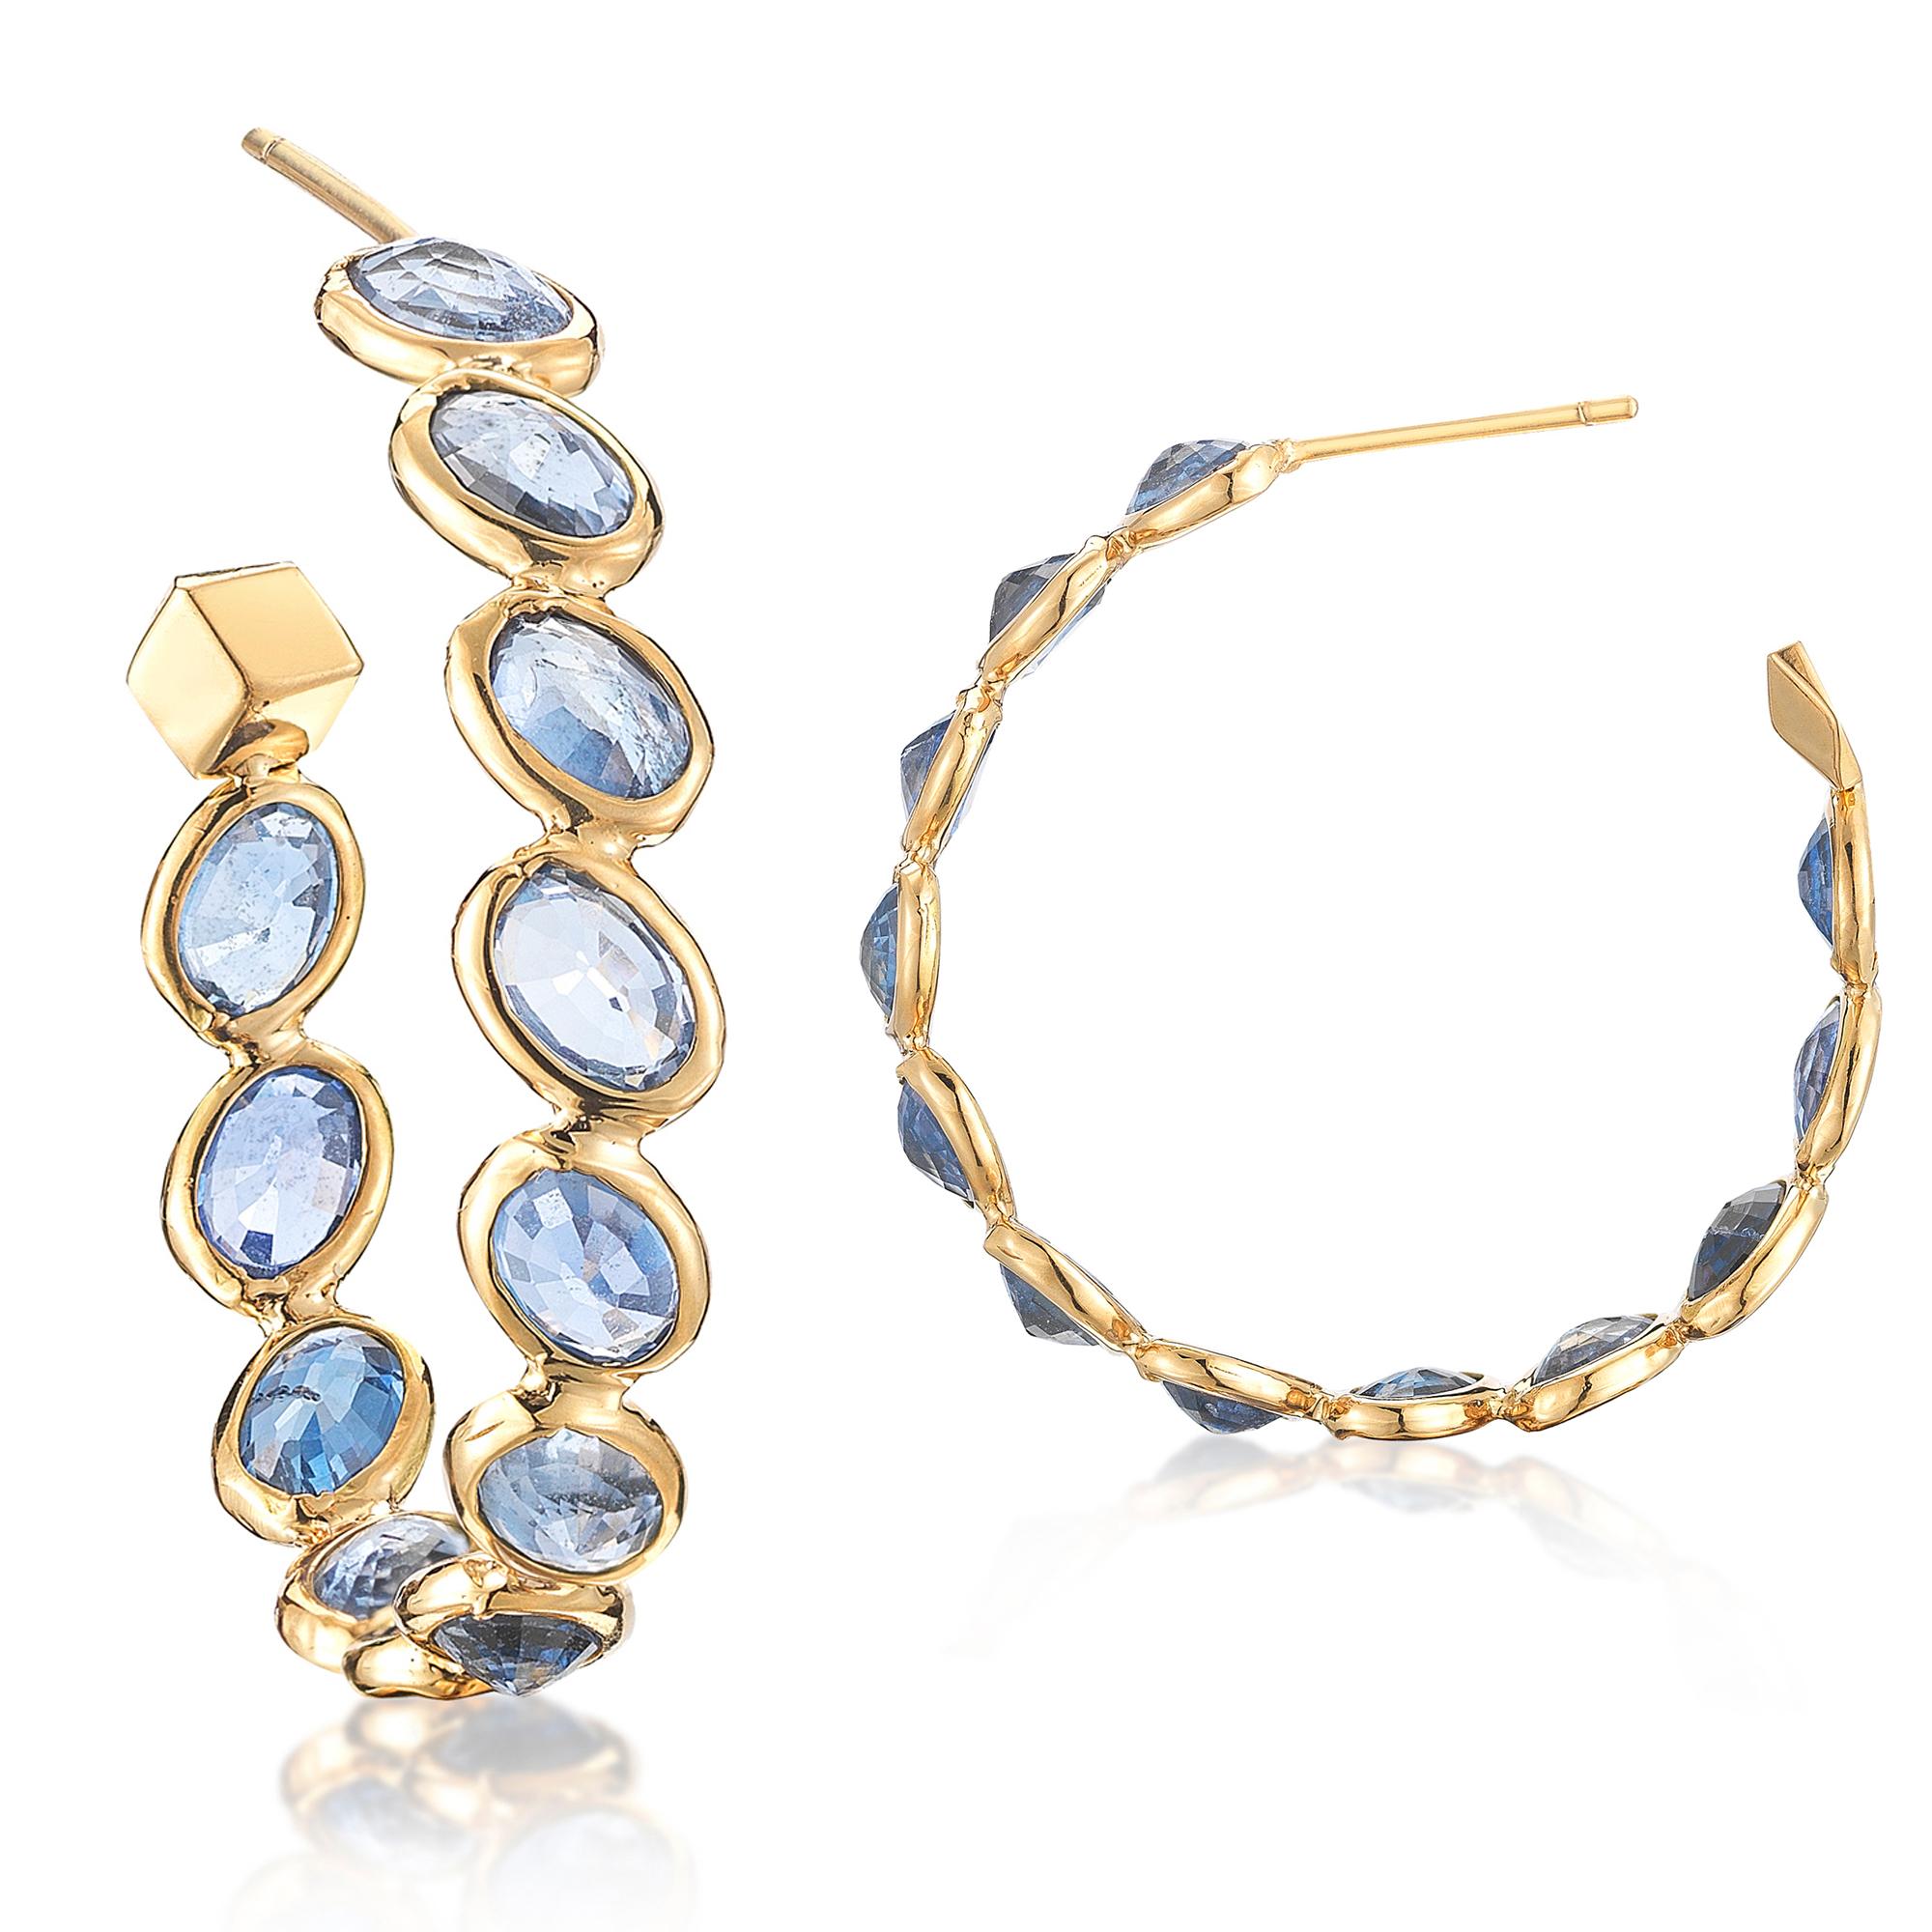 Oval Cut Paolo Costagli 18 Karat Yellow Gold Blue Sapphire Ombre Hoop Earrings, Medium